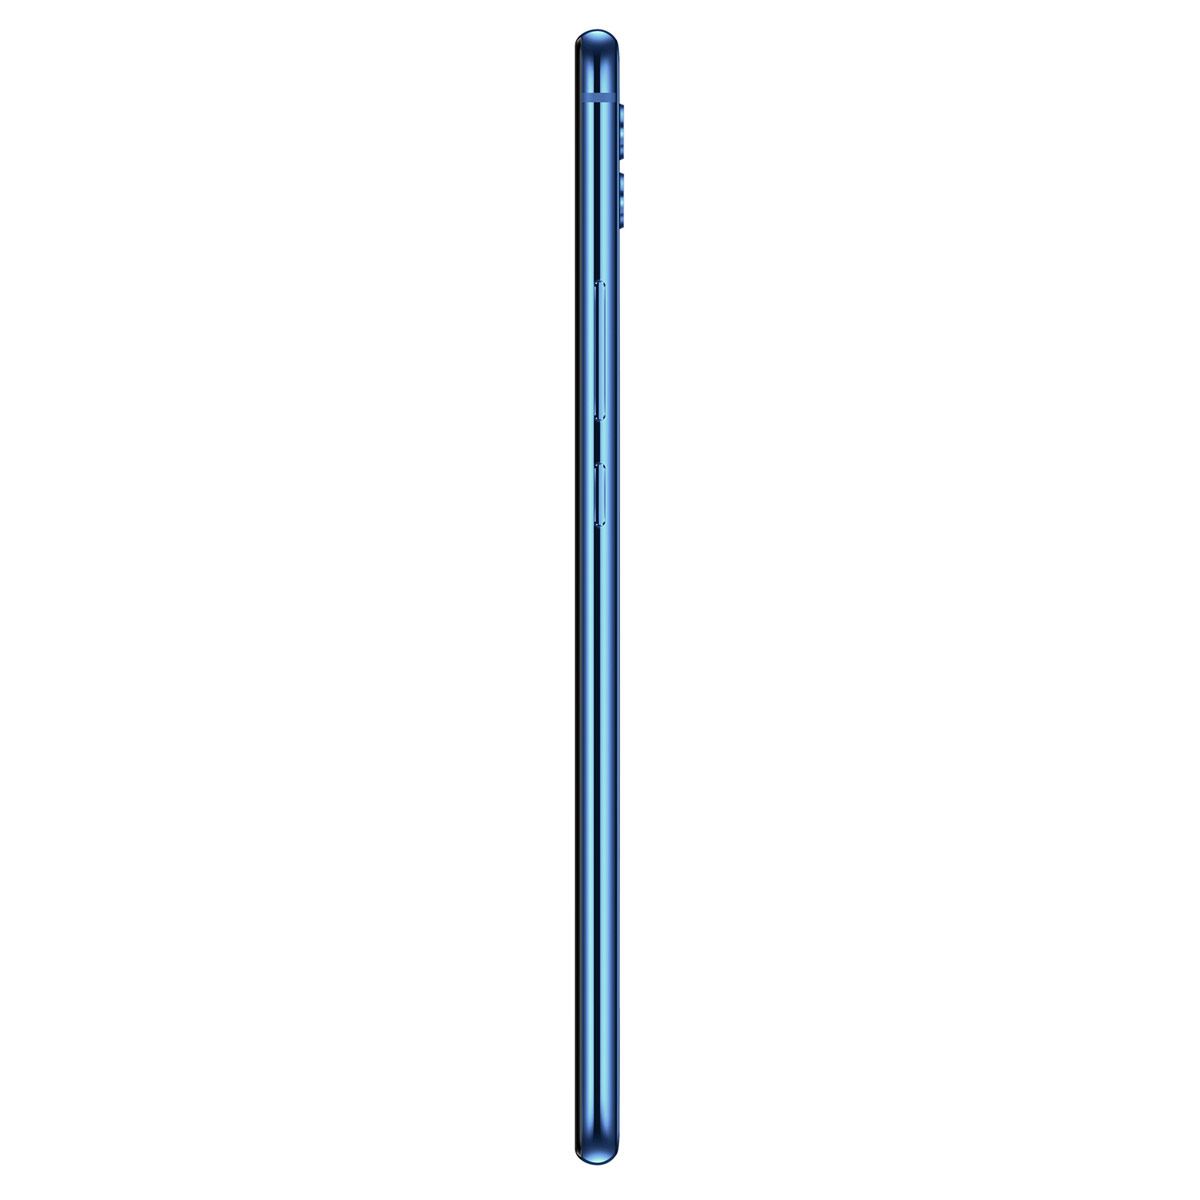 Celular Huawei Mate 20 Lite Azul R9 &#40;Telcel&#41;